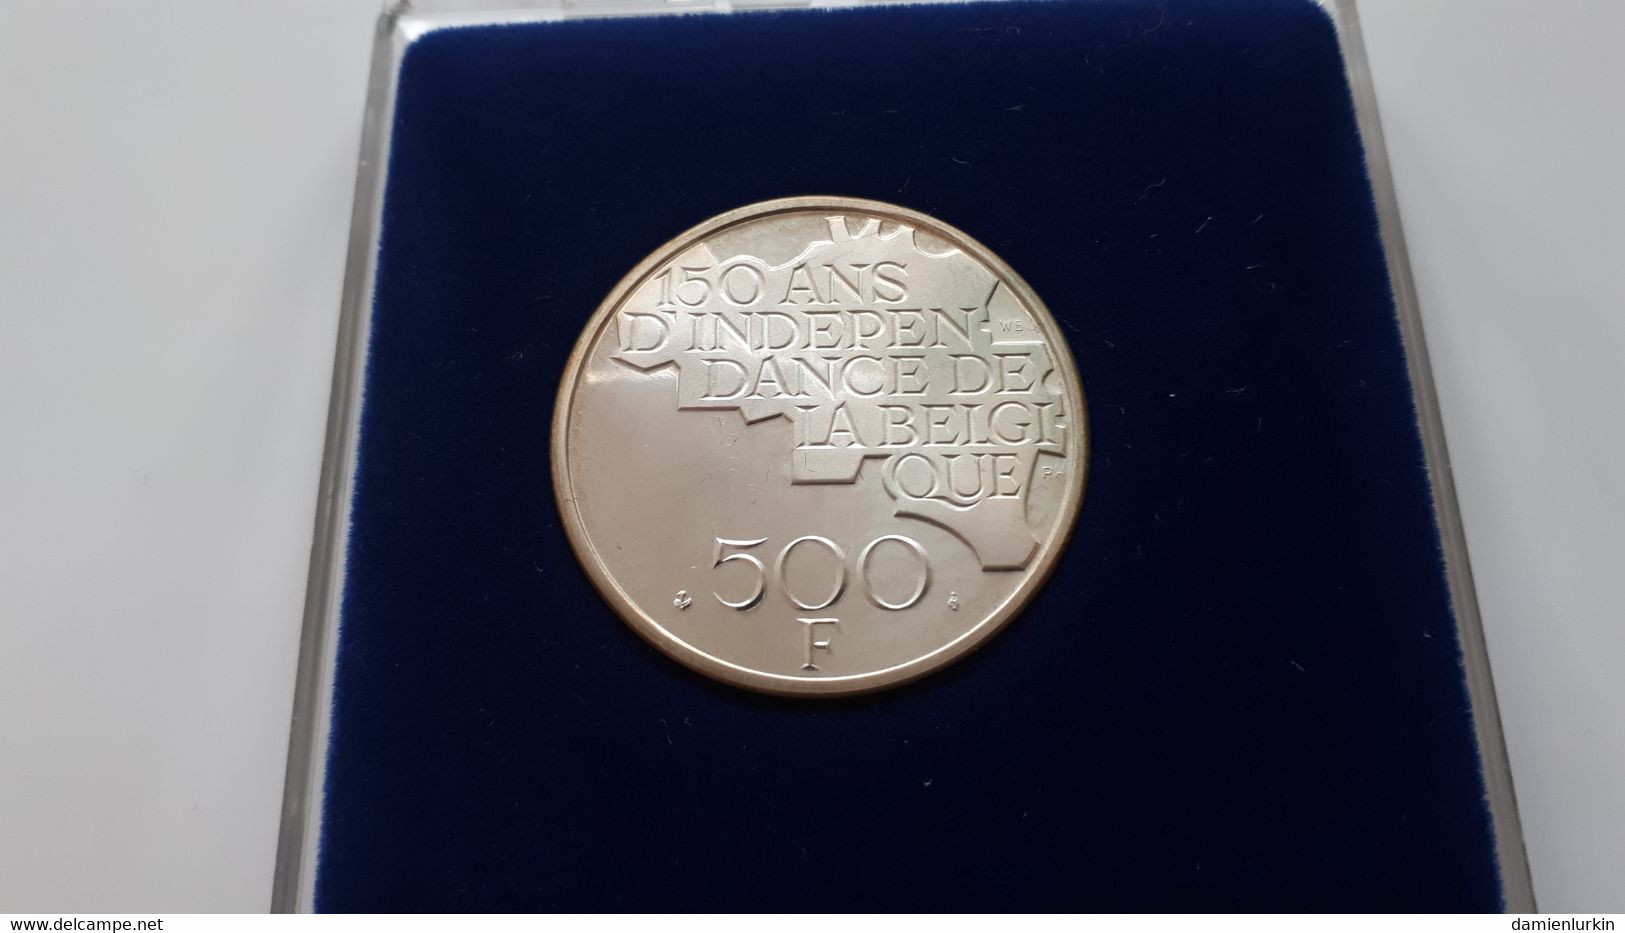 BELGIQUE BAUDOUIN 500 FRANCS QP 1830-1980 150ANS INDEPENDANCE QUALITY PROOF ARGENT/ZILVER/SILVER DANS SA BOITE D'ORIGINE - 500 Francs